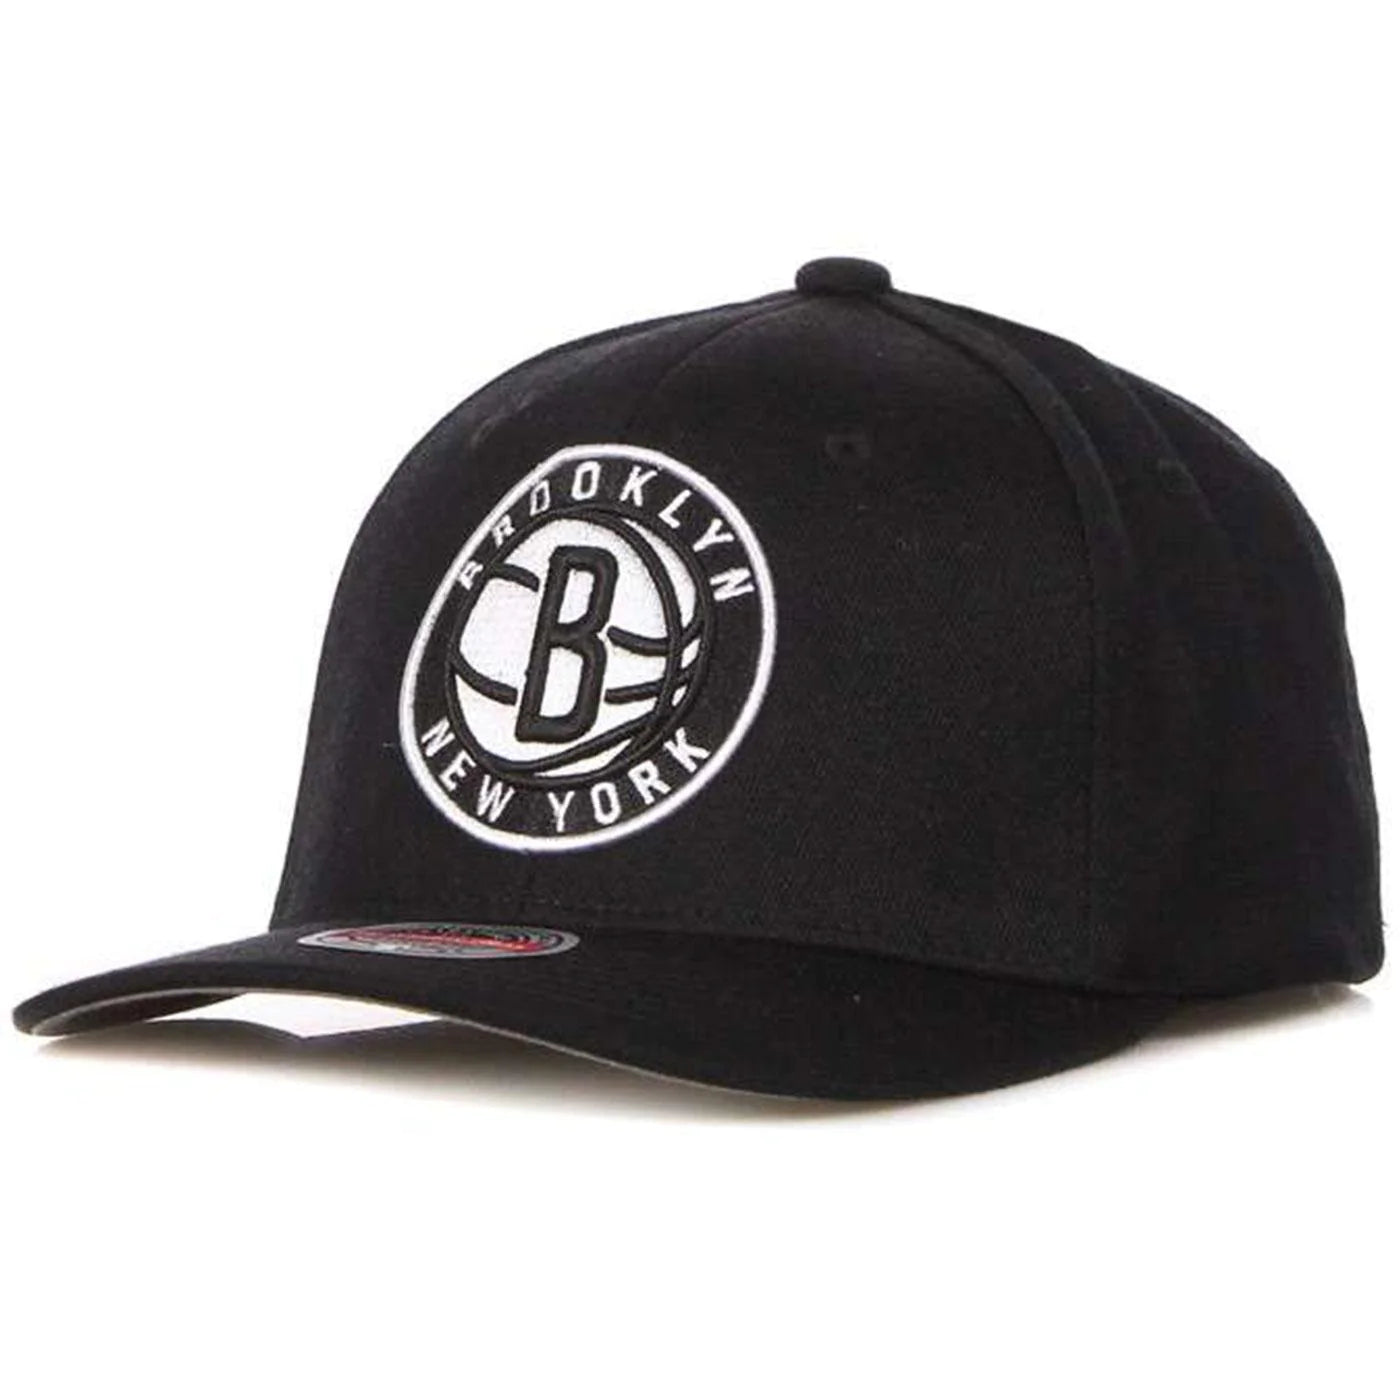 قبعة بروكلين نتس Team Ground قابلة للتعديل